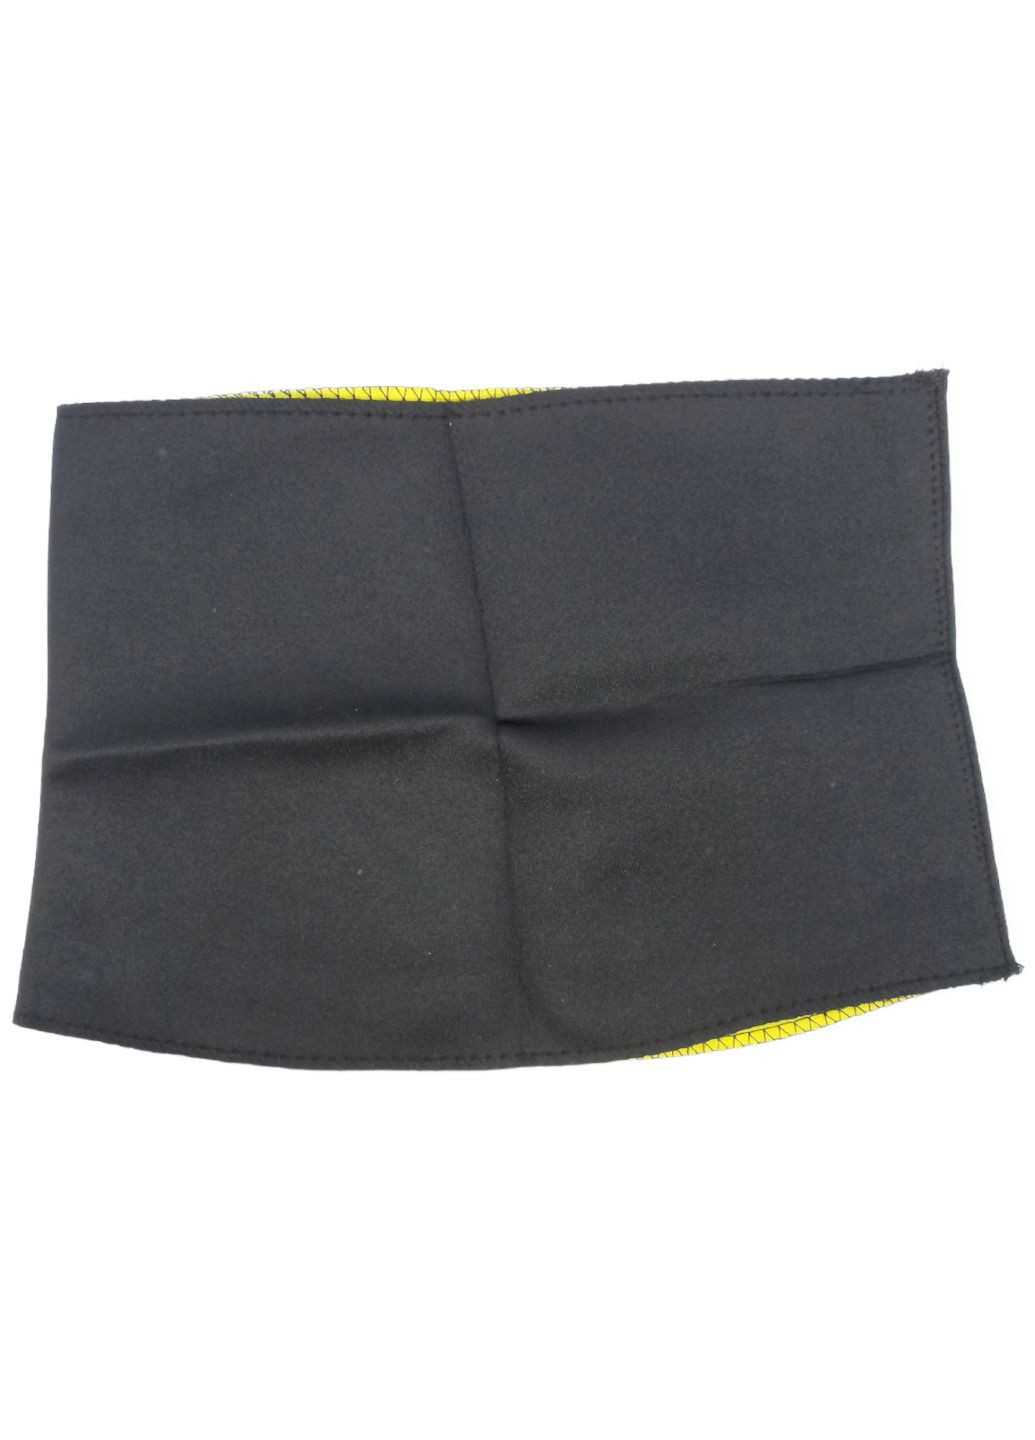 Пояс утягивающий корсет спортивный для похудения и коррекции фигуры XL черный с желтым No Brand (262535003)